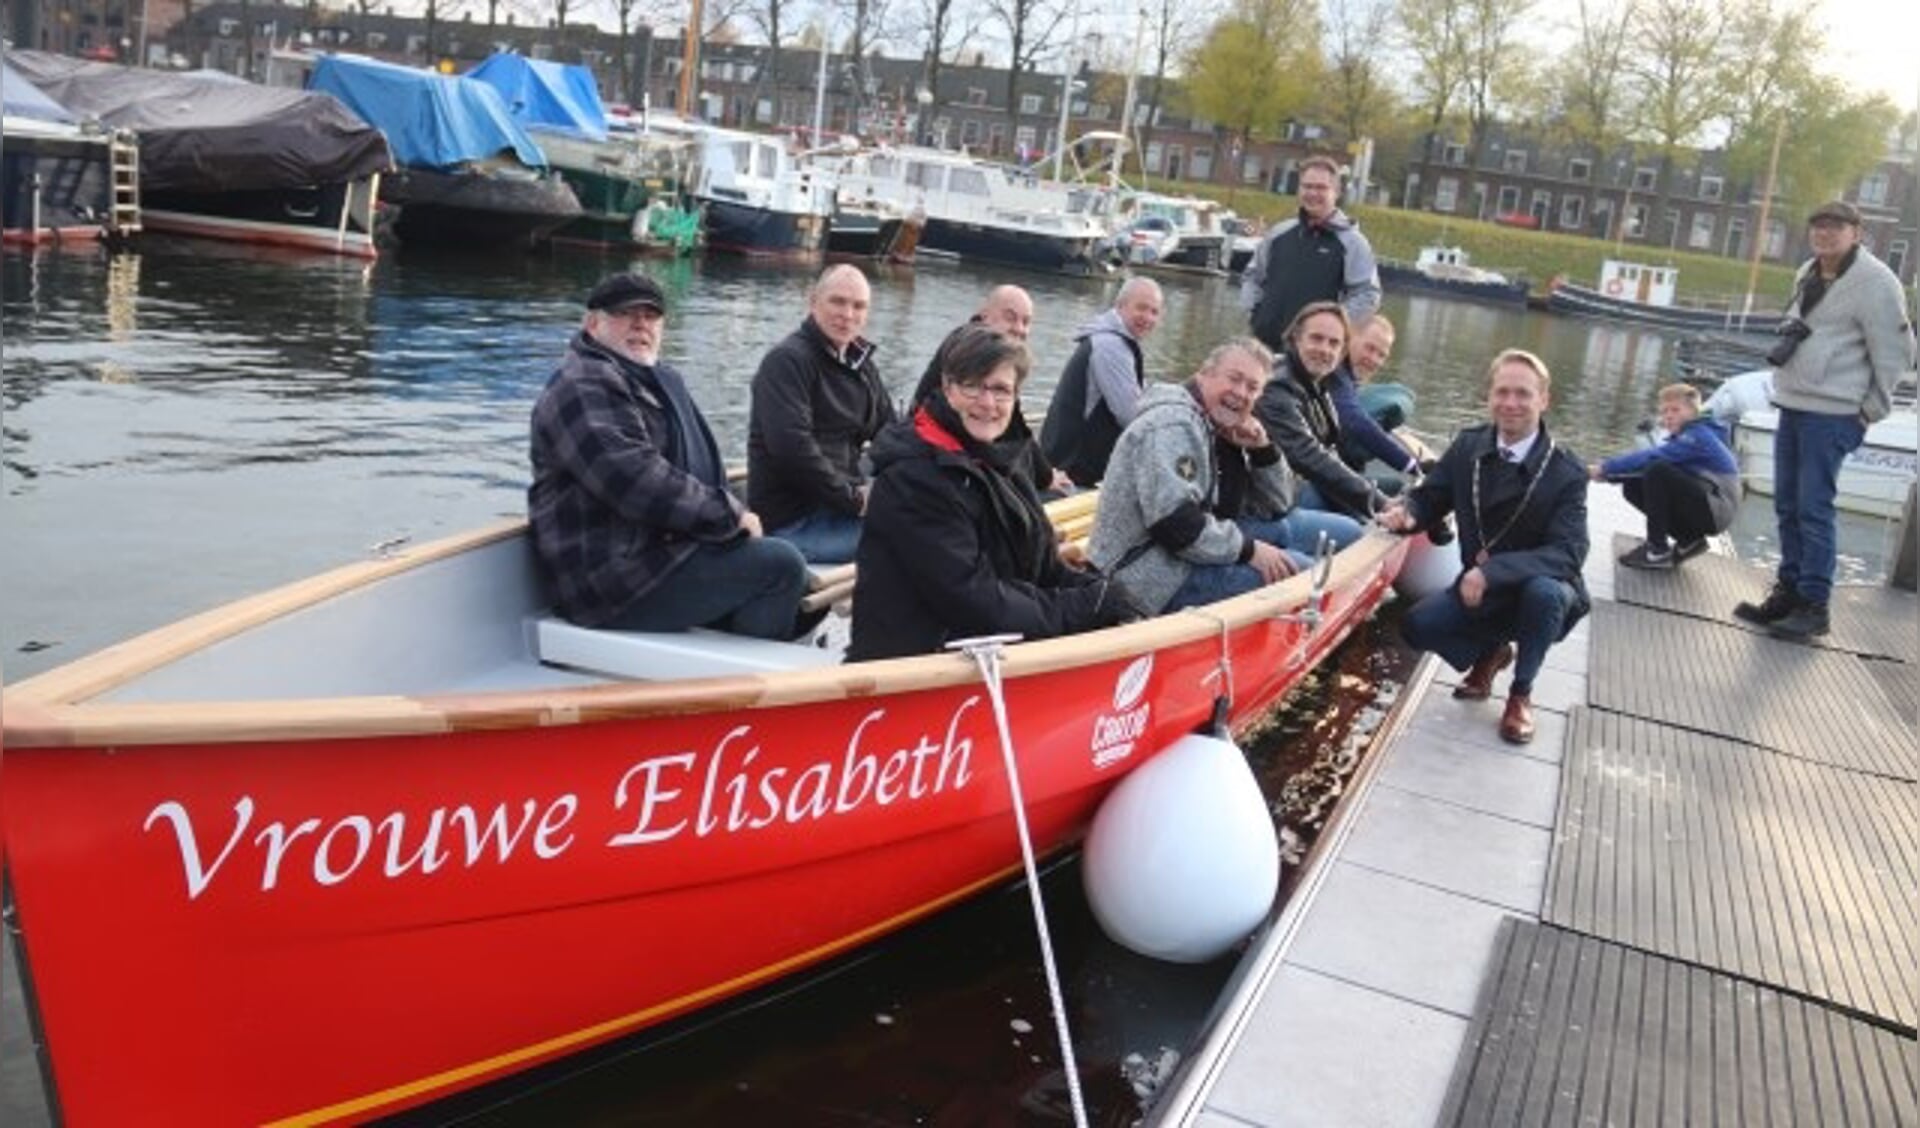 Burgemeester Gerdo van Grootheest doopte de nieuwe boot Elisabeth voor de roeivereniging Culemborg.